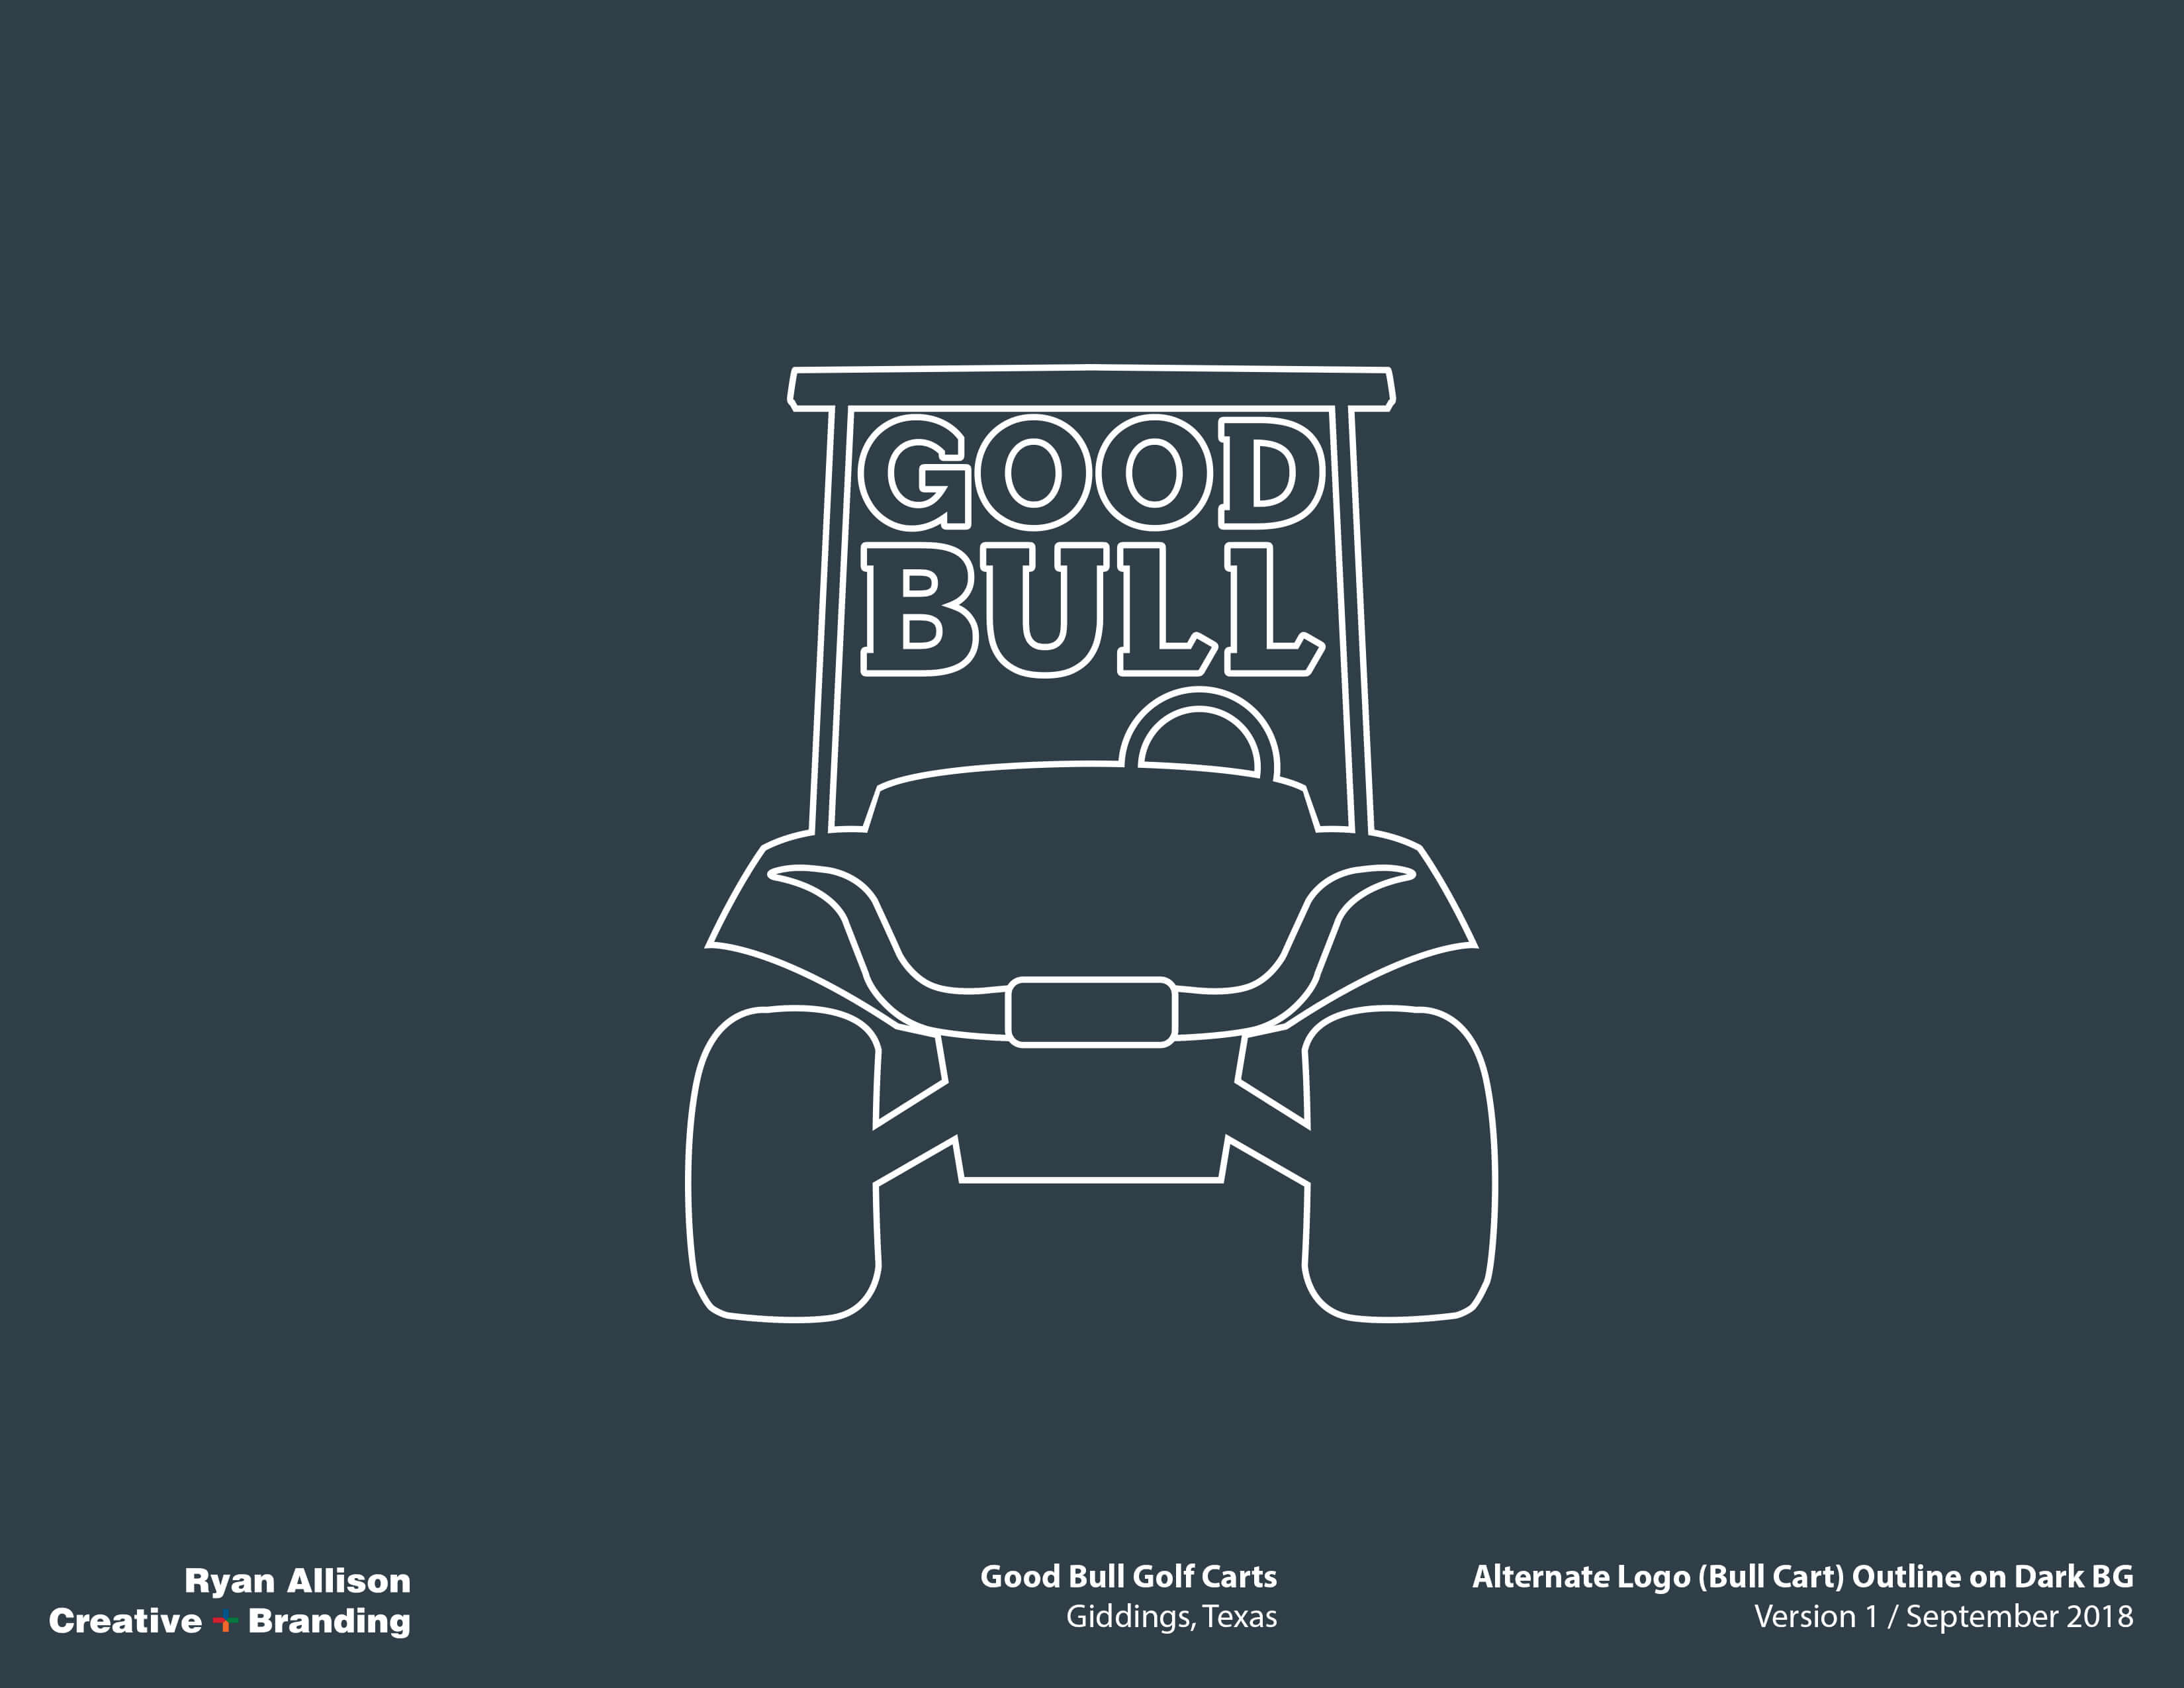 Good Bull Golf Carts Alternate Logo (Bull Cart) Outline on Dark BG - Logo - Ryan Allison Creative + Branding